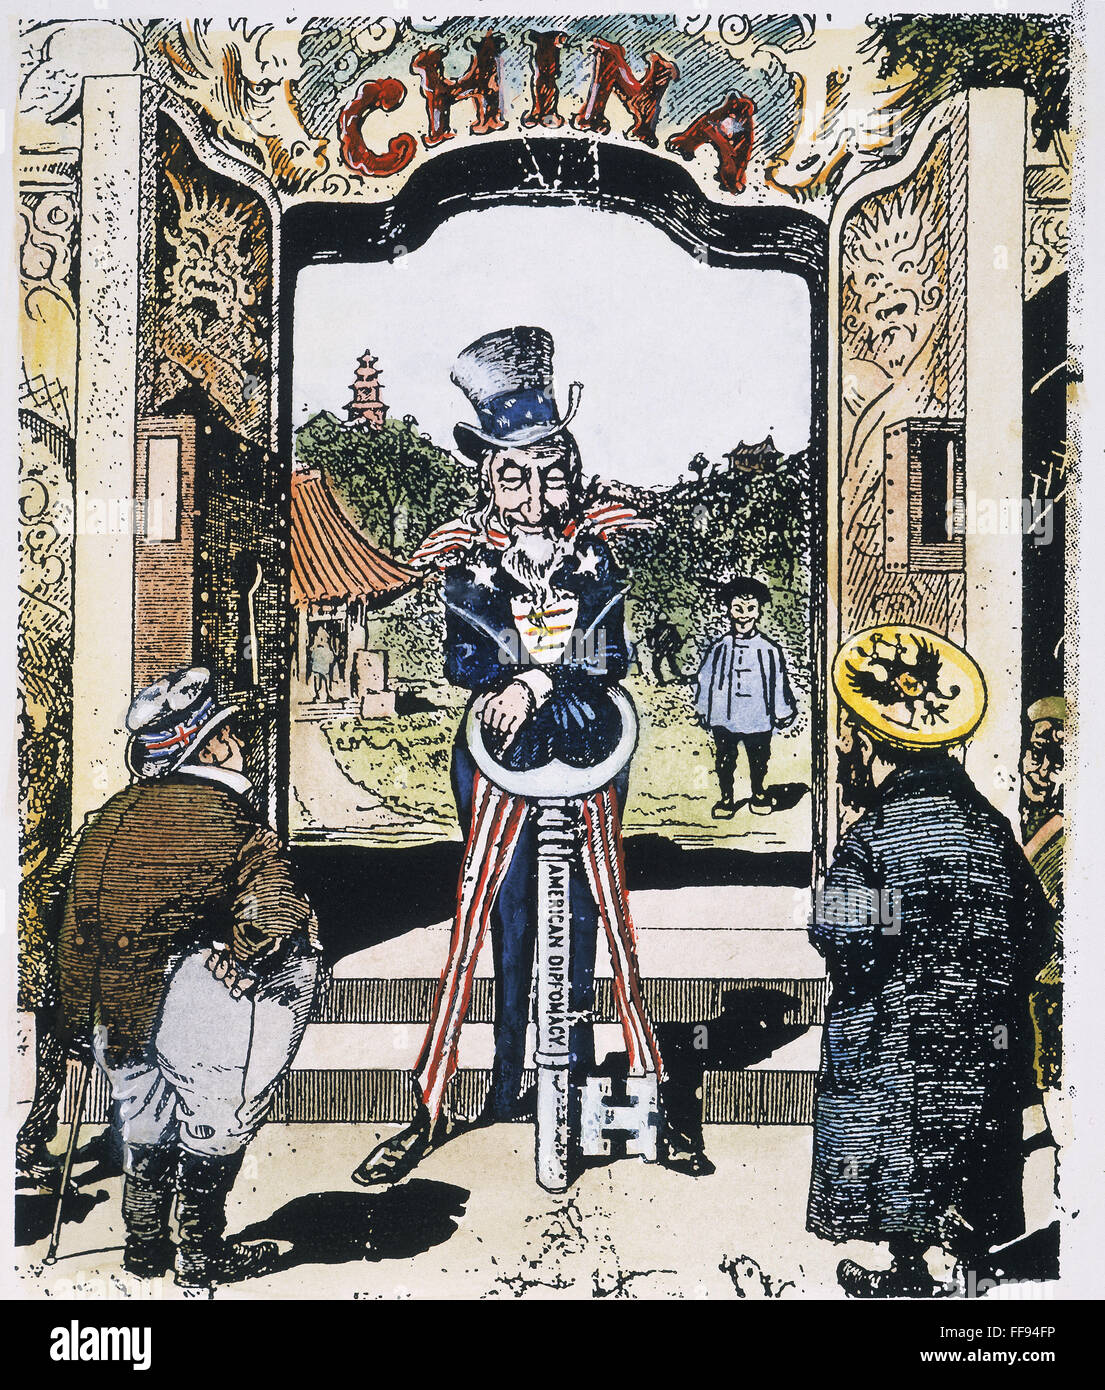 OFFENEN TÜR CARTOON, 1900. / nAn amerikanischen Cartoon von 1900 zeigt Uncle Sam für Freihandel mit dem Schlüssel der amerikanischen Diplomatie während des wirtschaftlichen Konkurrenten England und Russland Blick auf China zu öffnen. Stockfoto